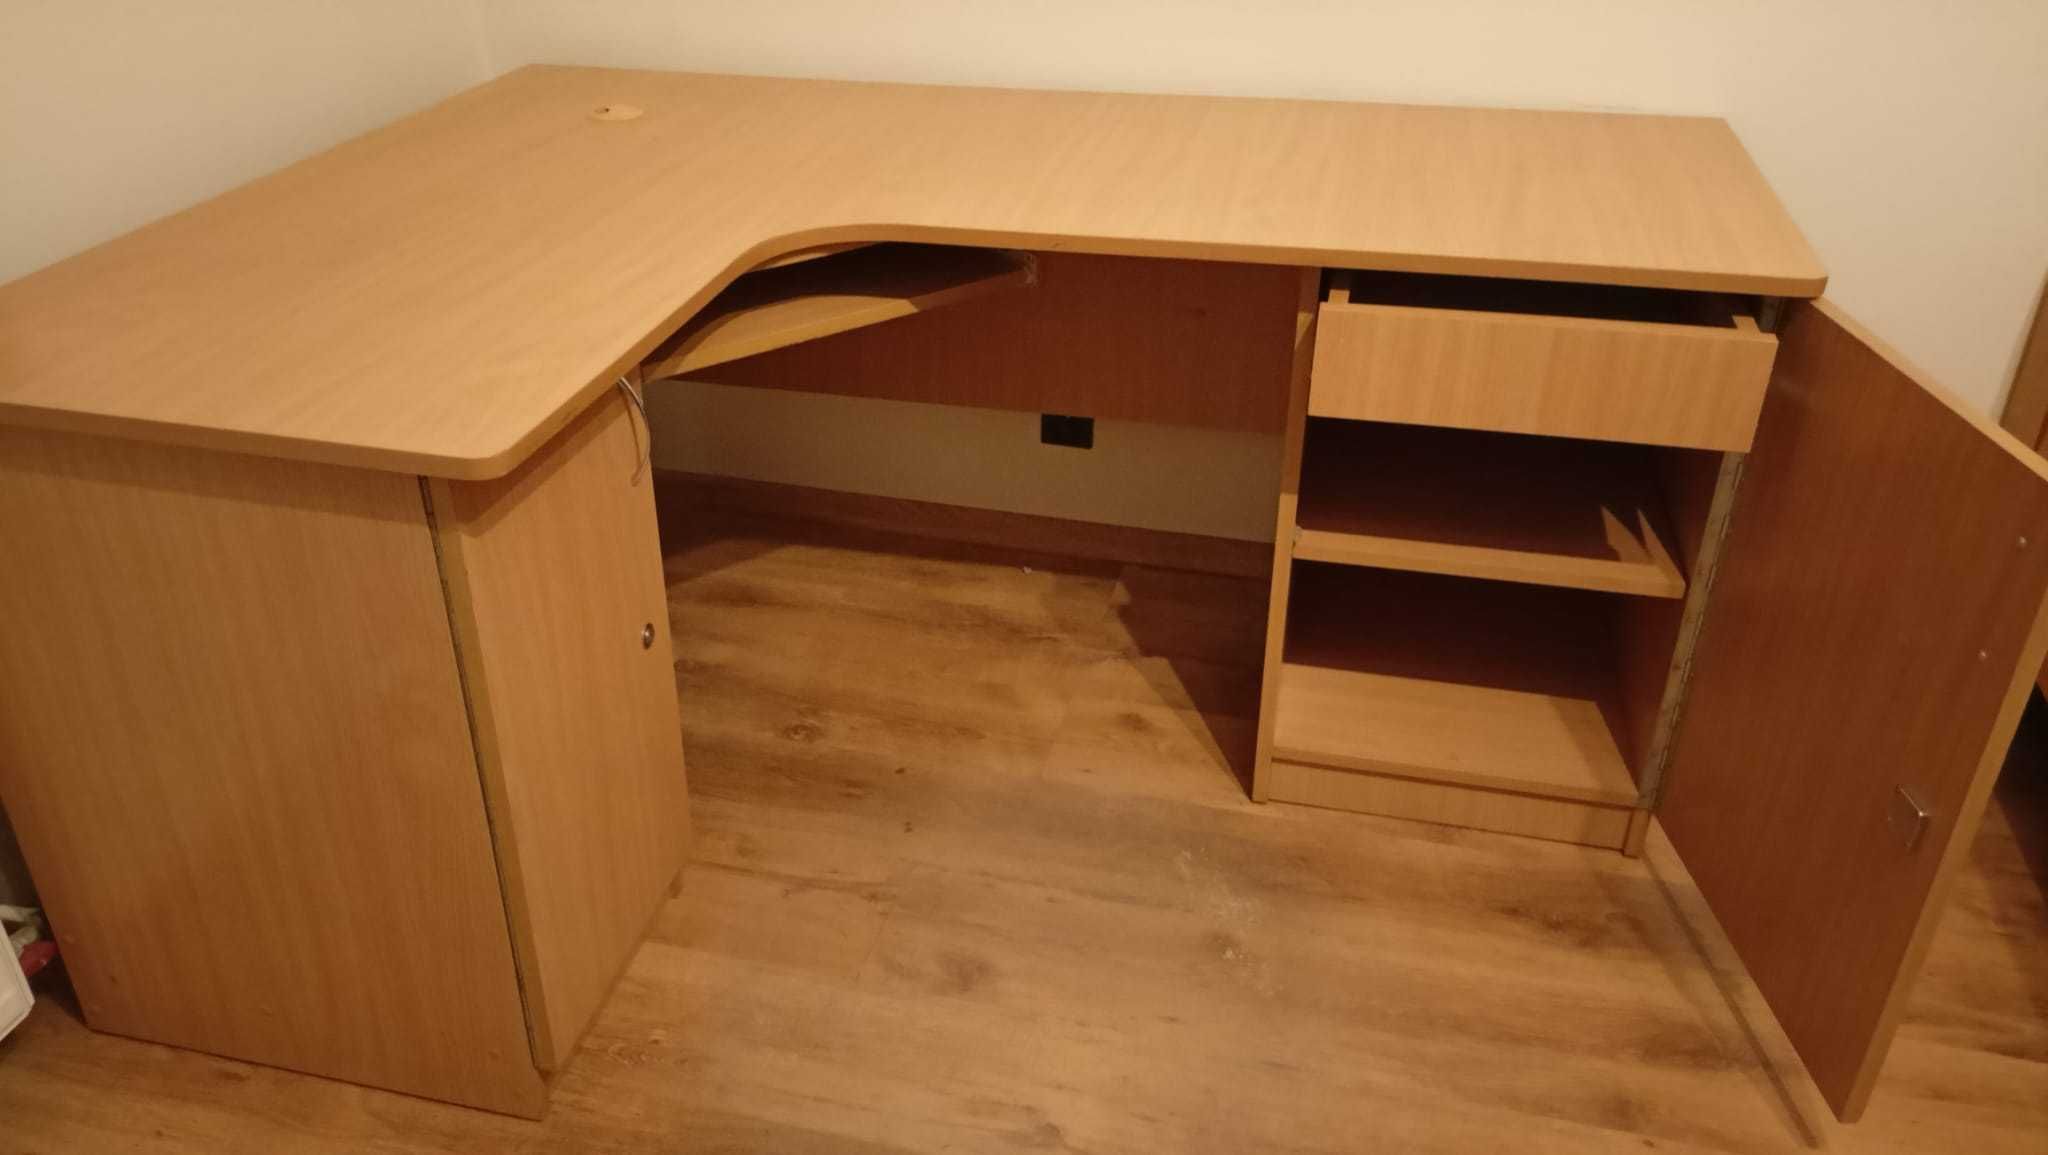 Duże jasne biurko w zestawie z półką ścienną